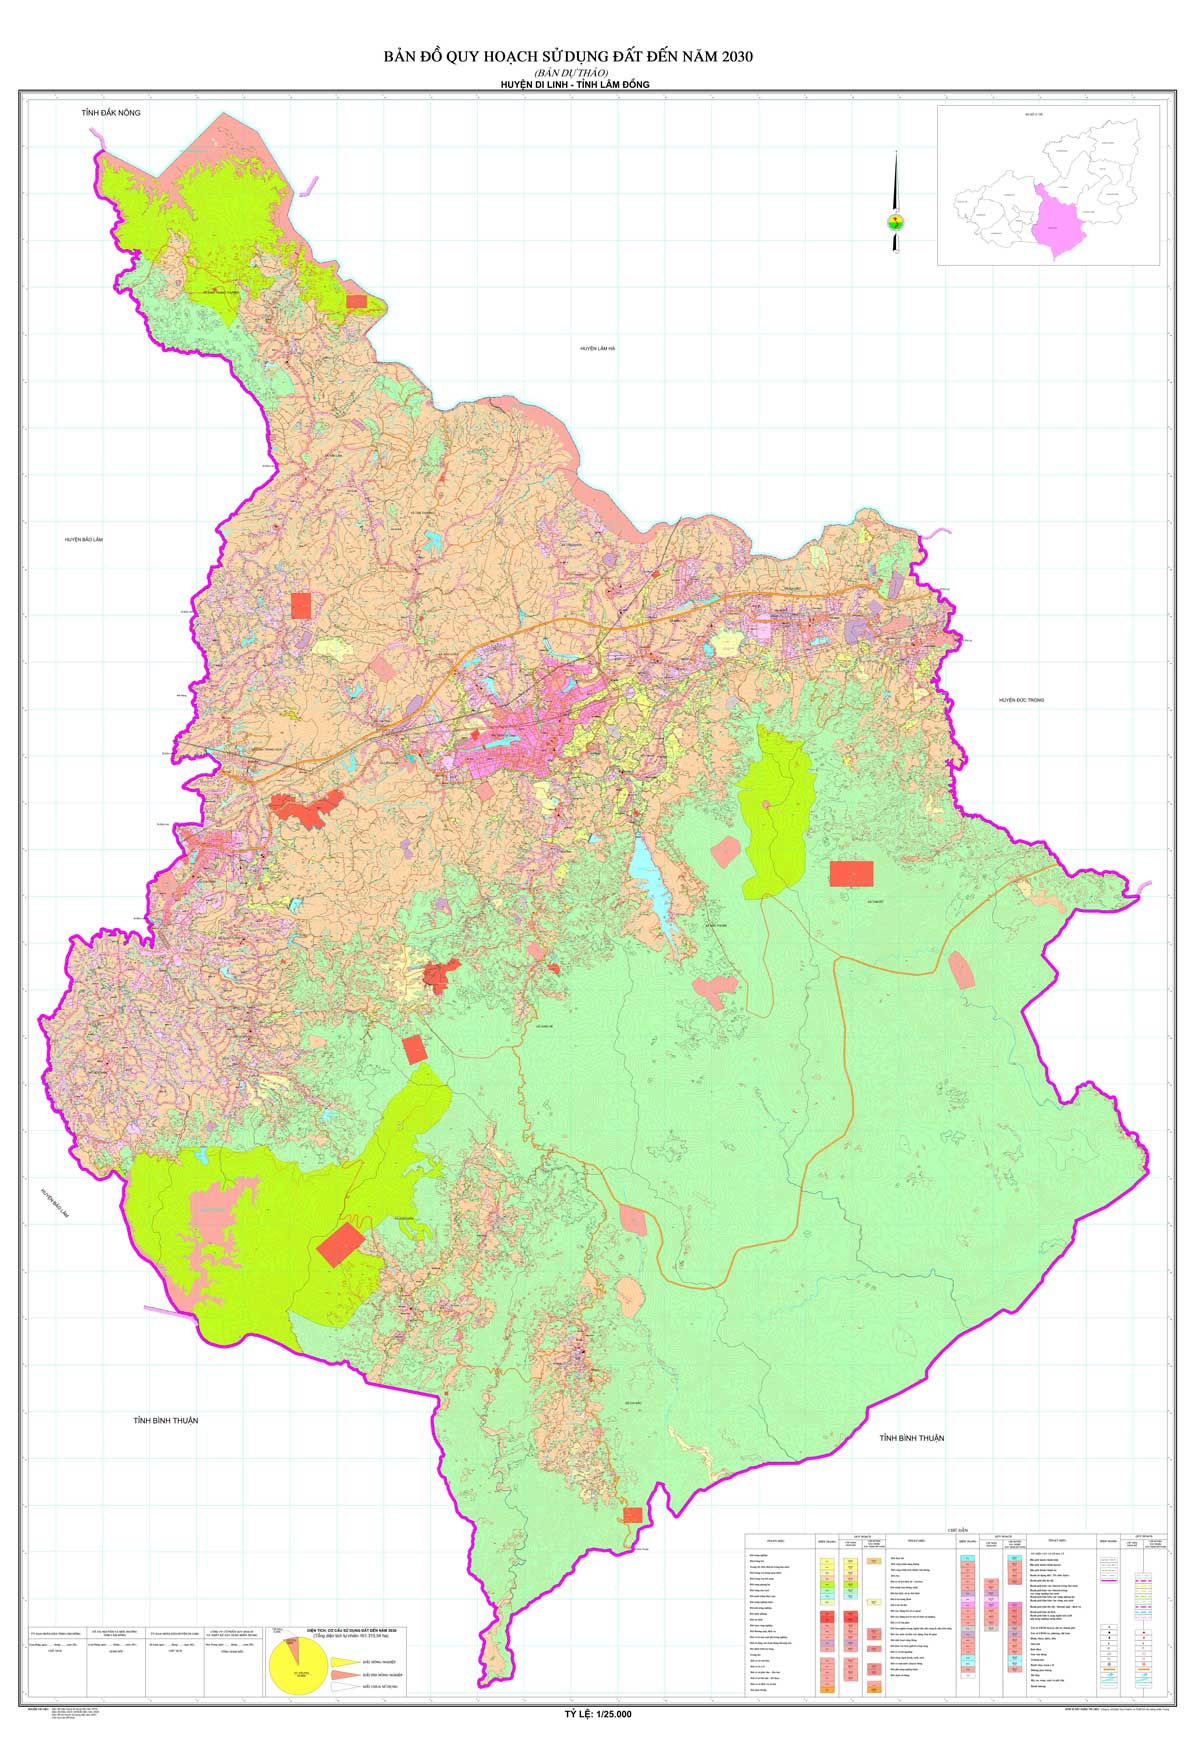 Bản đồ QHSDĐ huyện Di Linh đến năm 2030 (dự thảo)